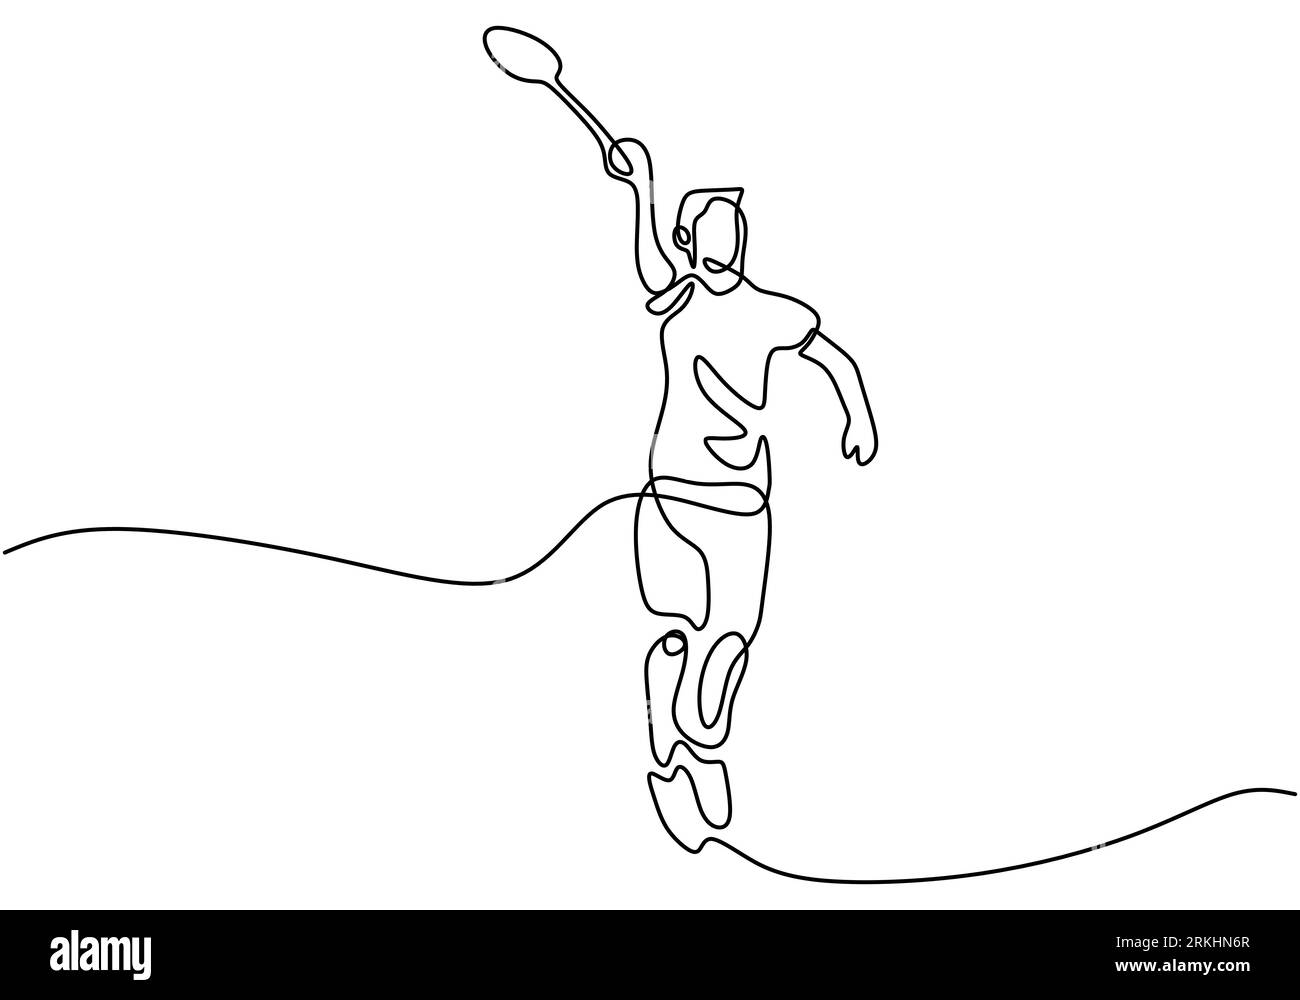 Dibujo de línea continua de hombre jugando bádminton. Personaje Un jugador de bádminton está jugando con una raqueta aislada sobre fondo blanco. Torneo deportivo Ilustración del Vector